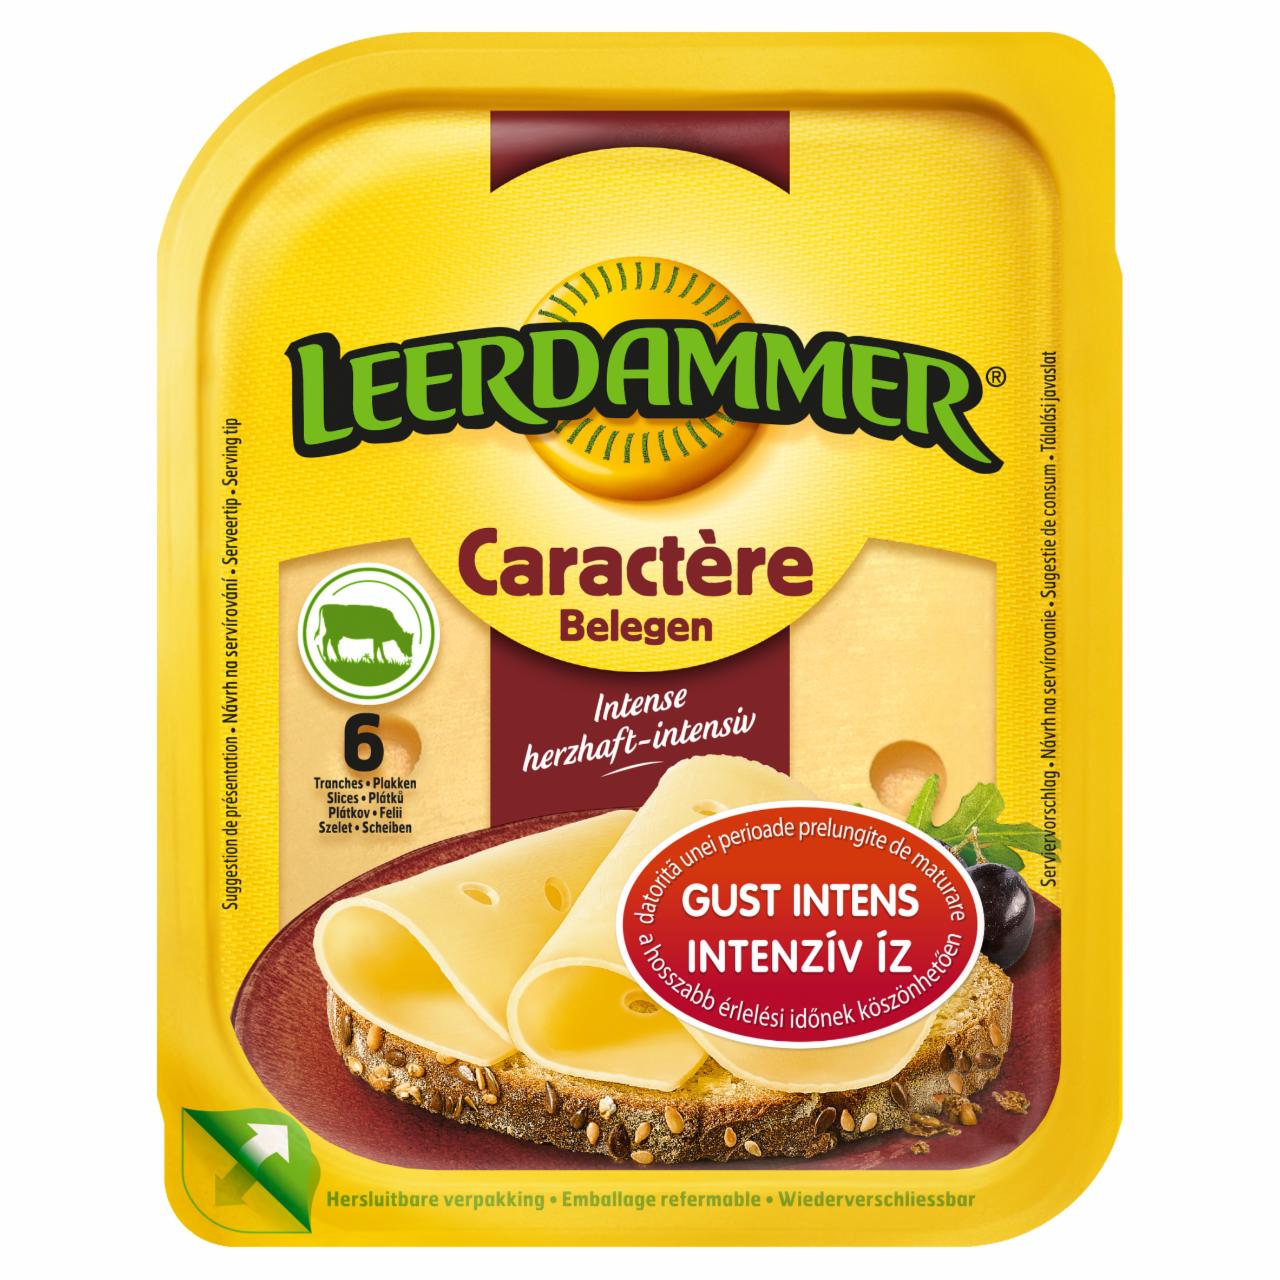 Képek - Leerdammer Caractère zsíros, félkemény, szeletelt sajt 125 g